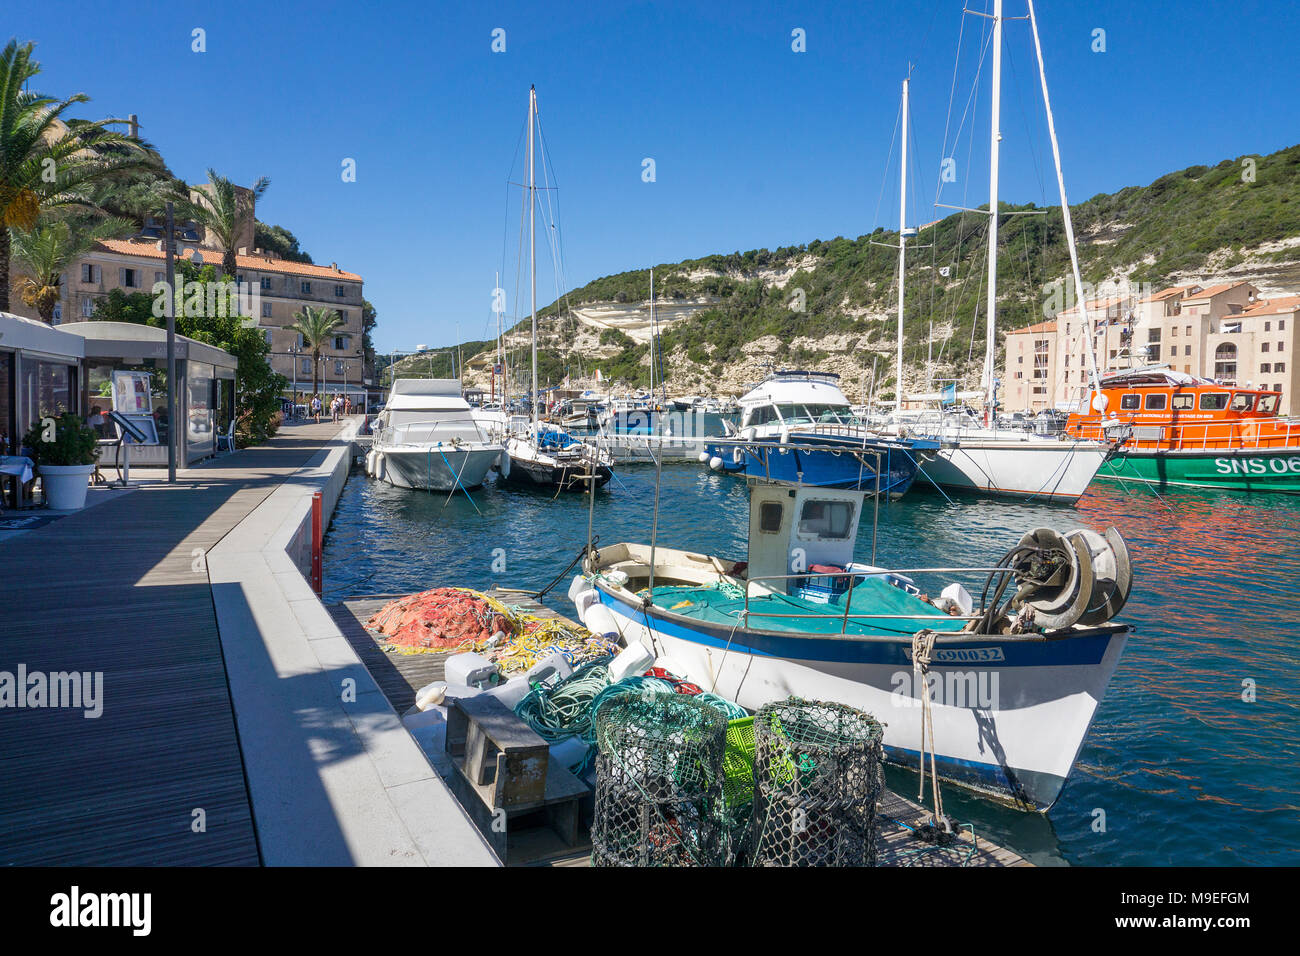 Bateau de pêcheur au port de plaisance et de pêche de Bonifacio, Corse, France, Europe, Méditerranée Banque D'Images